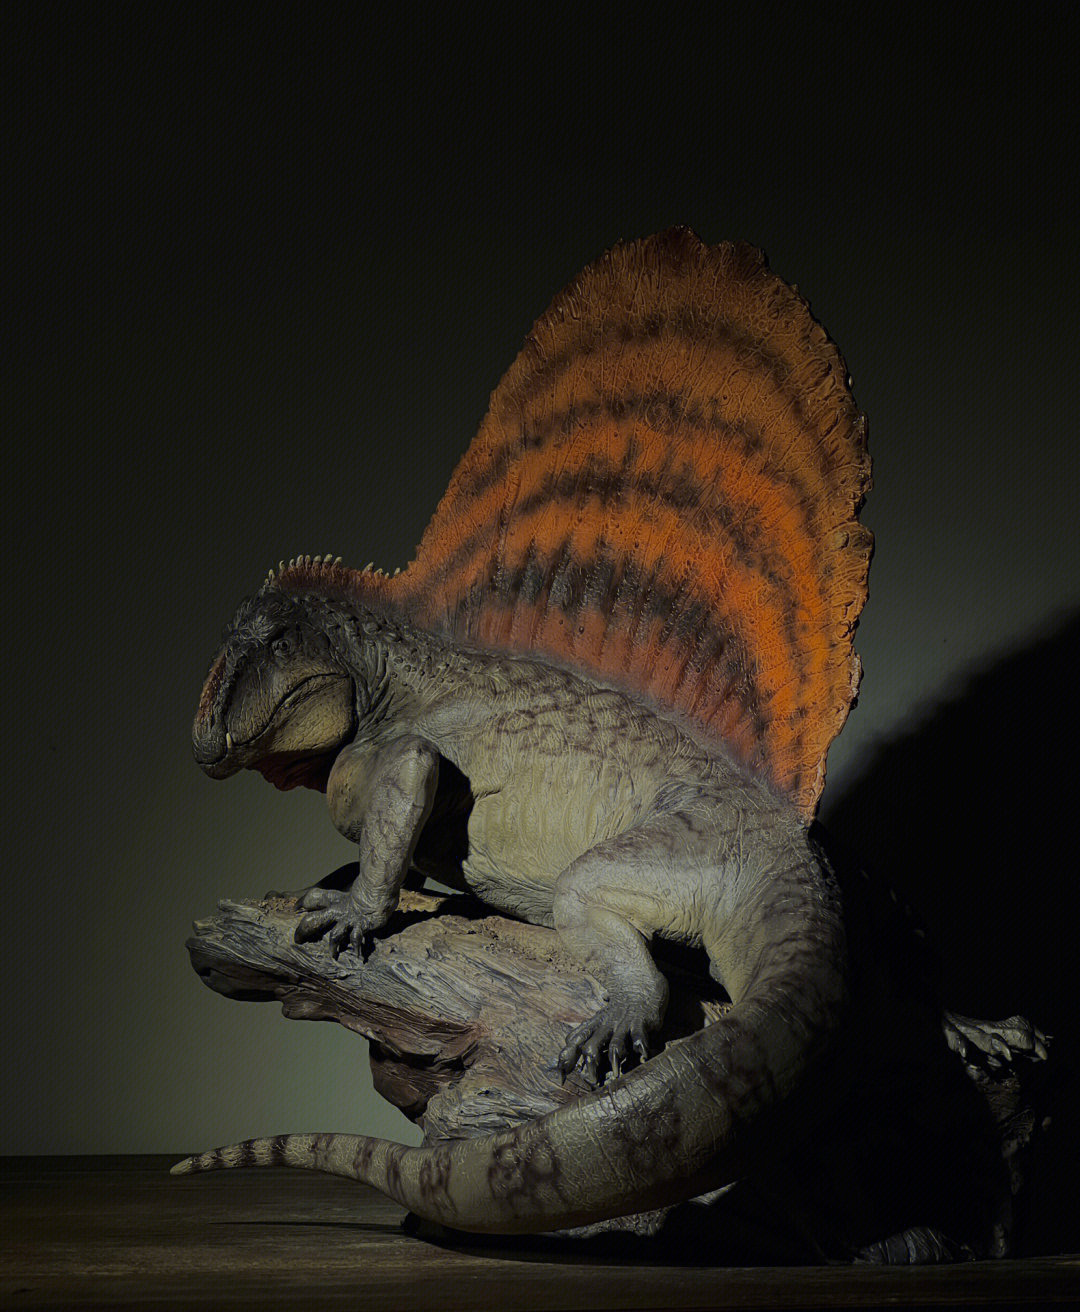 对异齿龙这个物种一直有一种莫名的喜爱